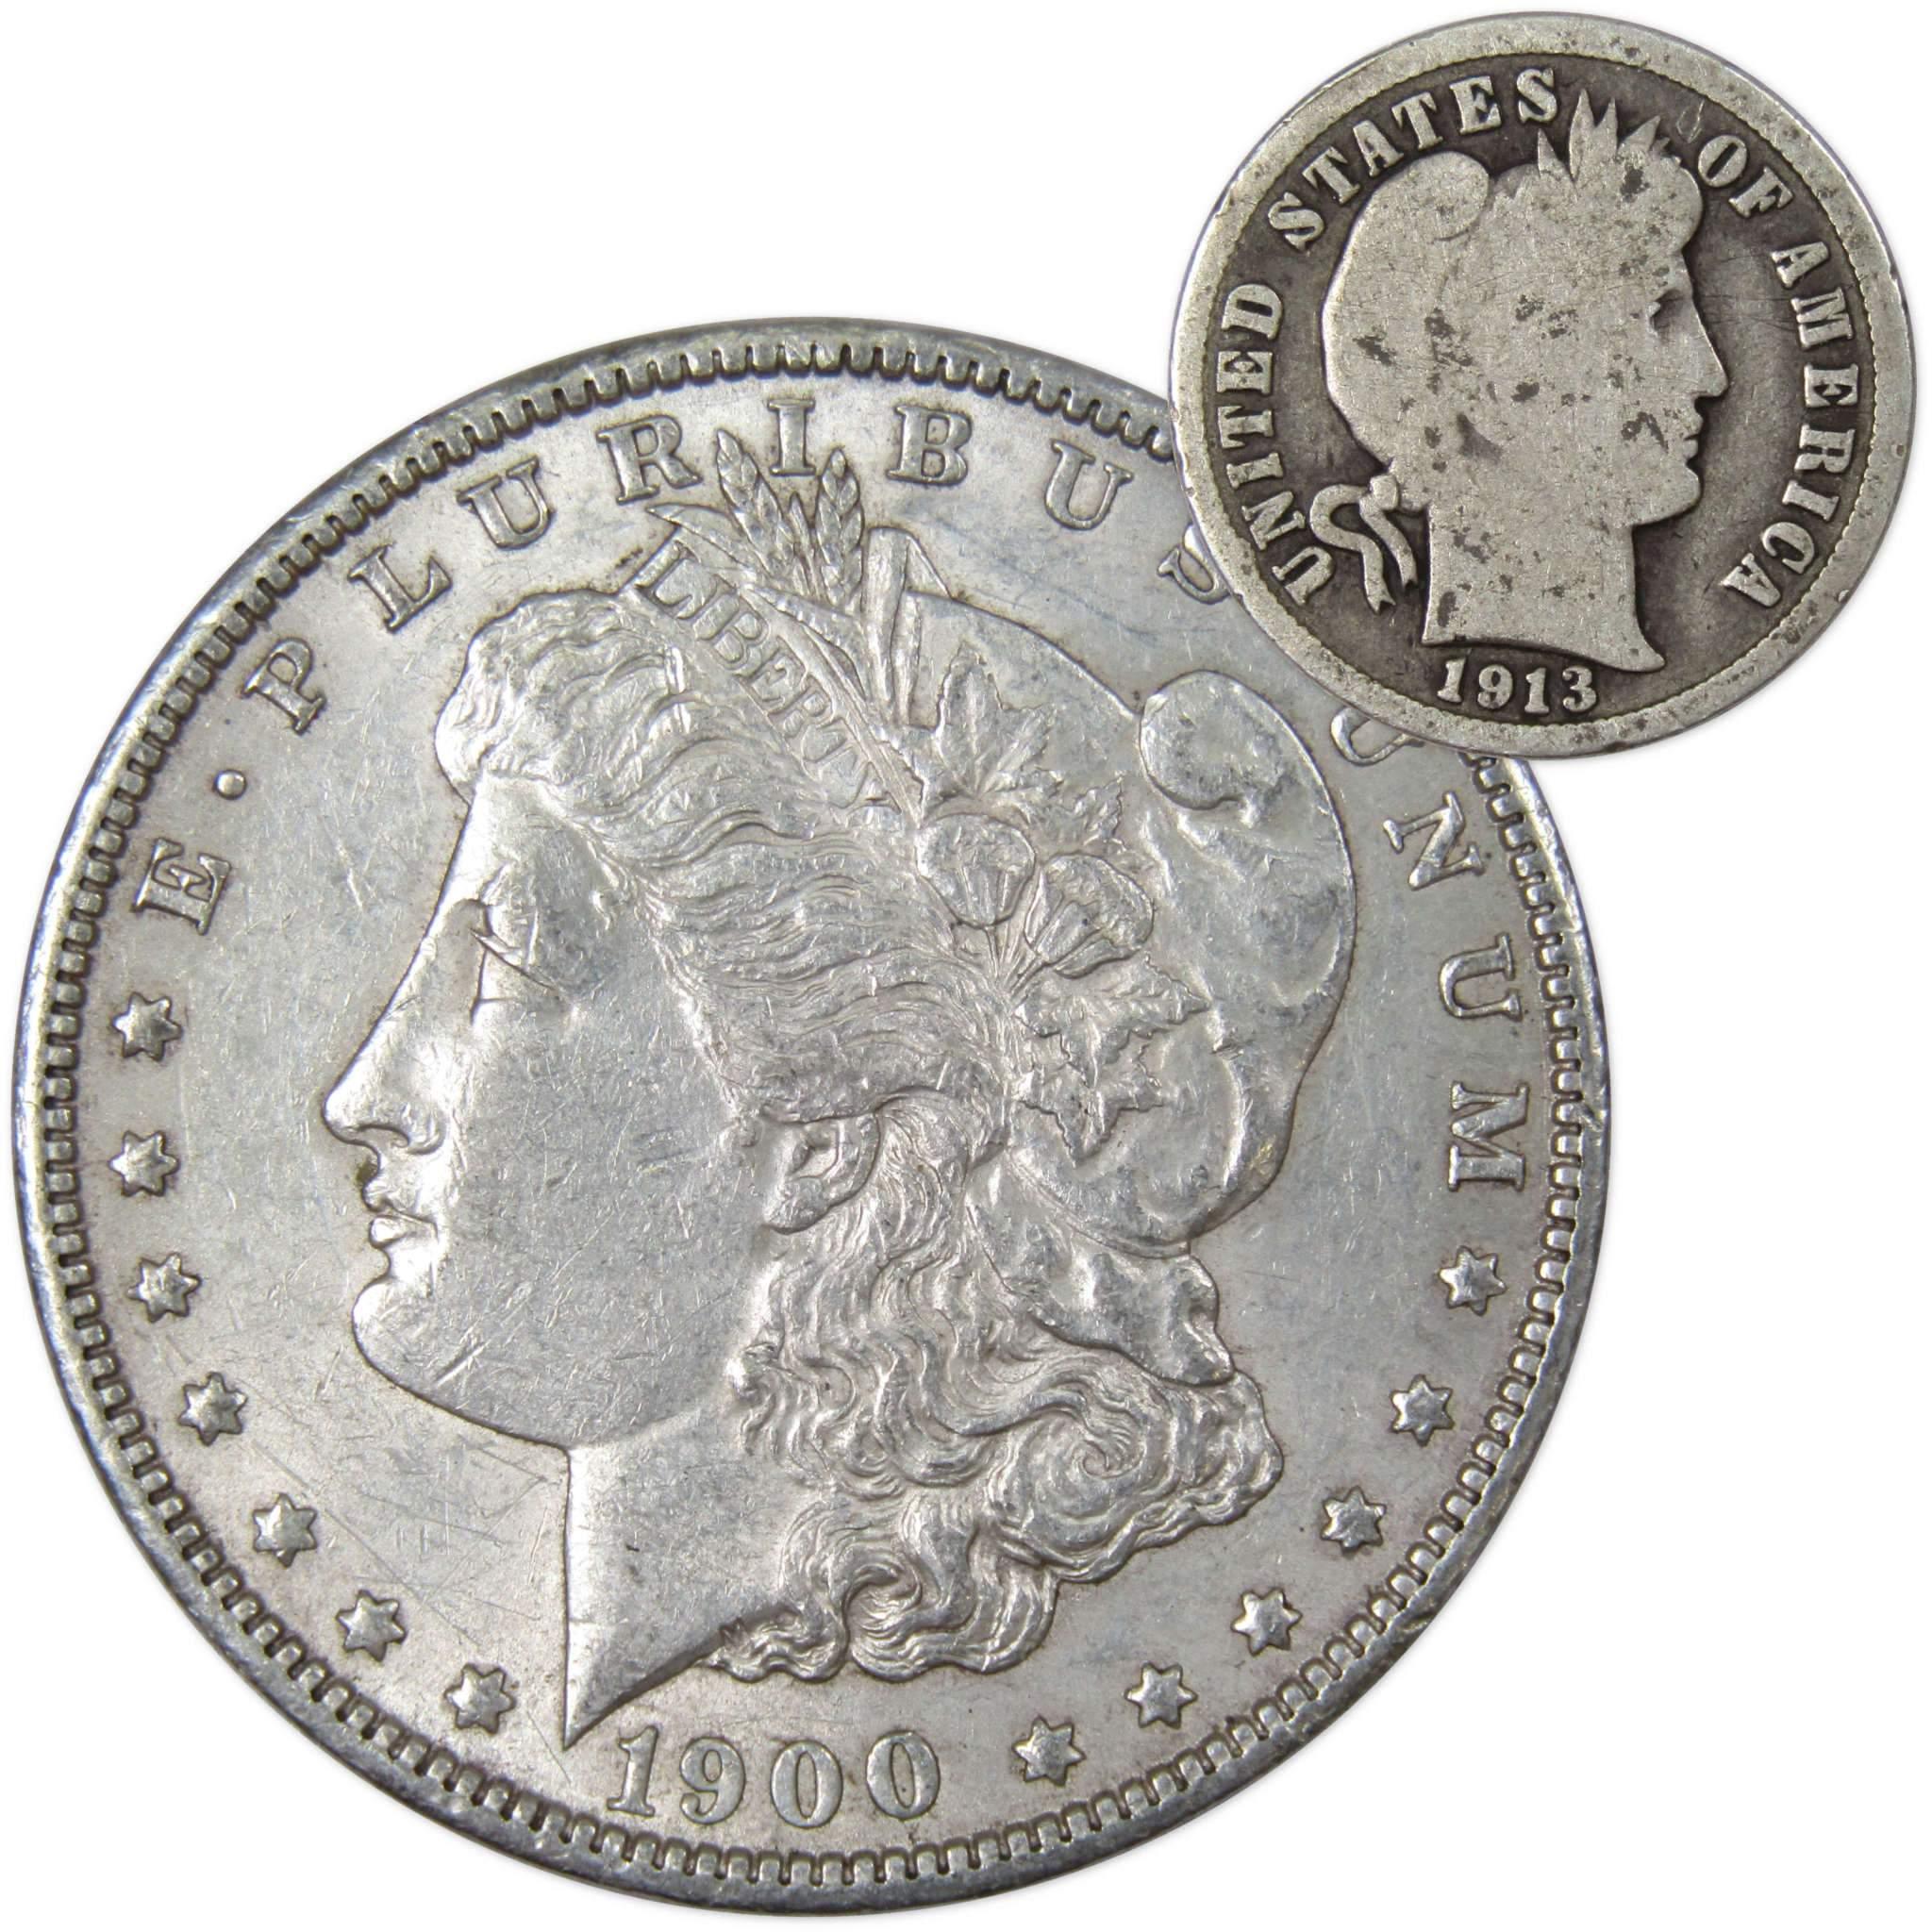 1900 Morgan Dollar XF EF Extremely Fine 90% Silver with 1913 Barber Dime G Good - Morgan coin - Morgan silver dollar - Morgan silver dollar for sale - Profile Coins &amp; Collectibles